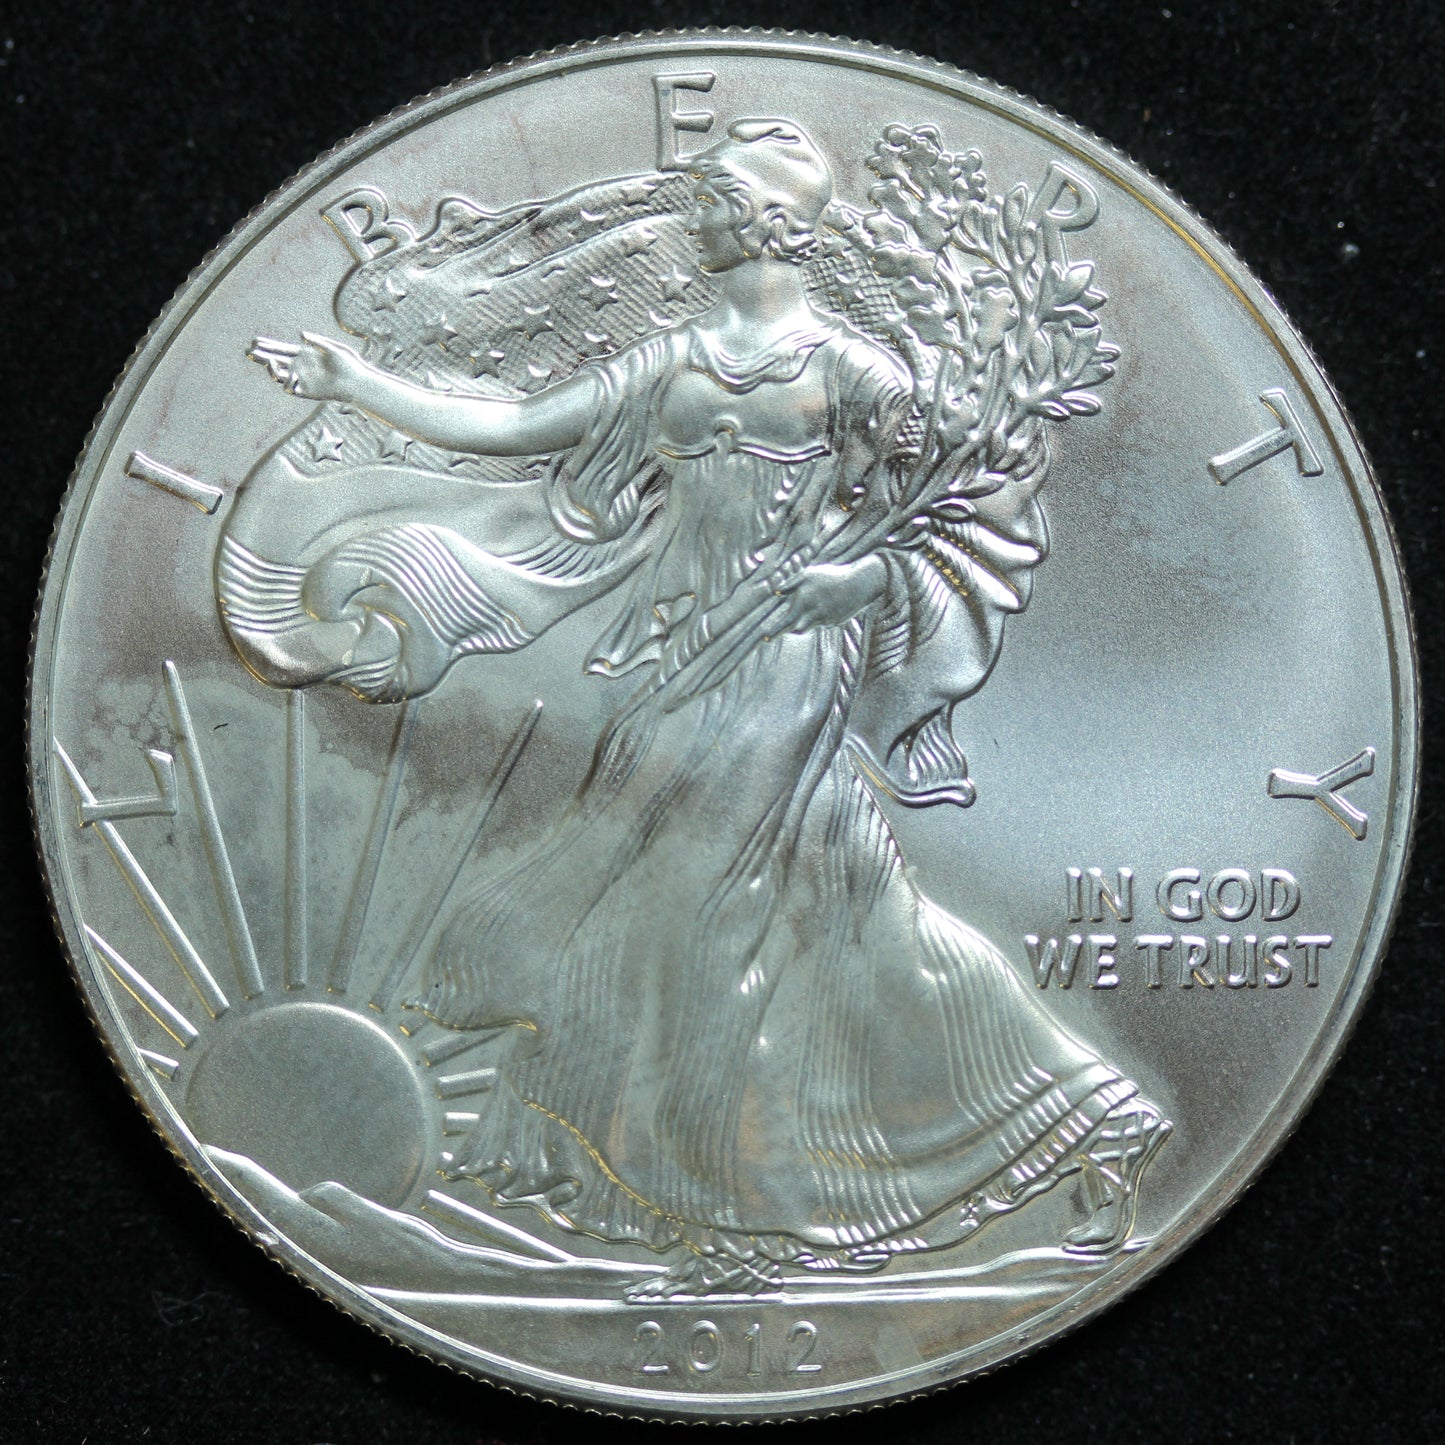 2012 American Silver Eagle 1 oz .999 Fine Silver Coin Marks/Spots